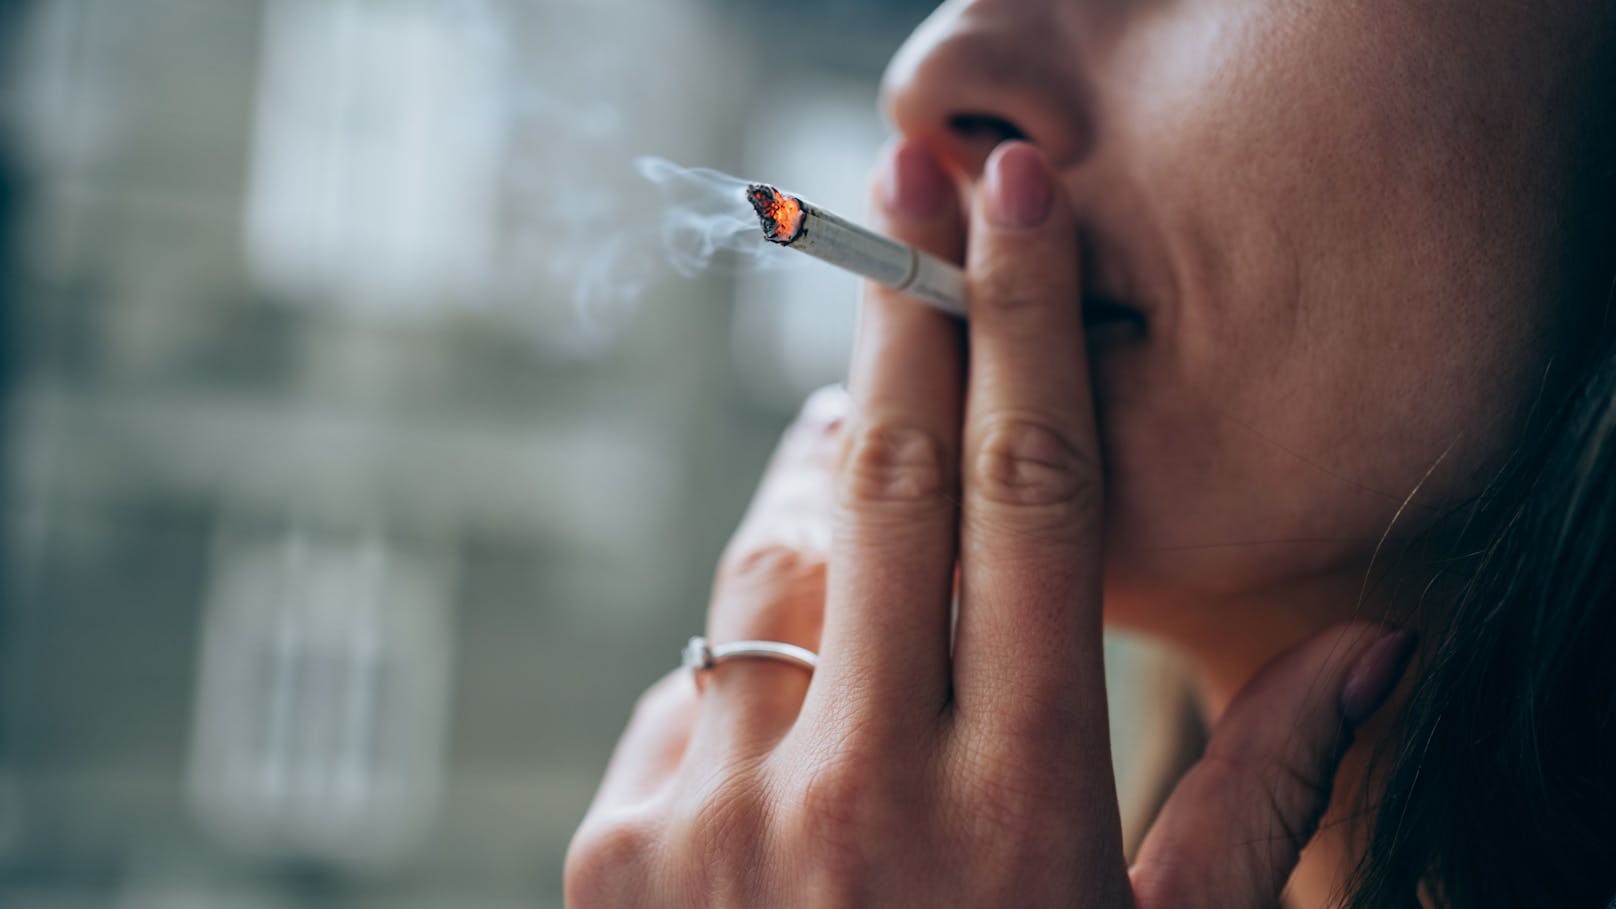 Raucher haben kleineres Gehirn – laut einer Studie